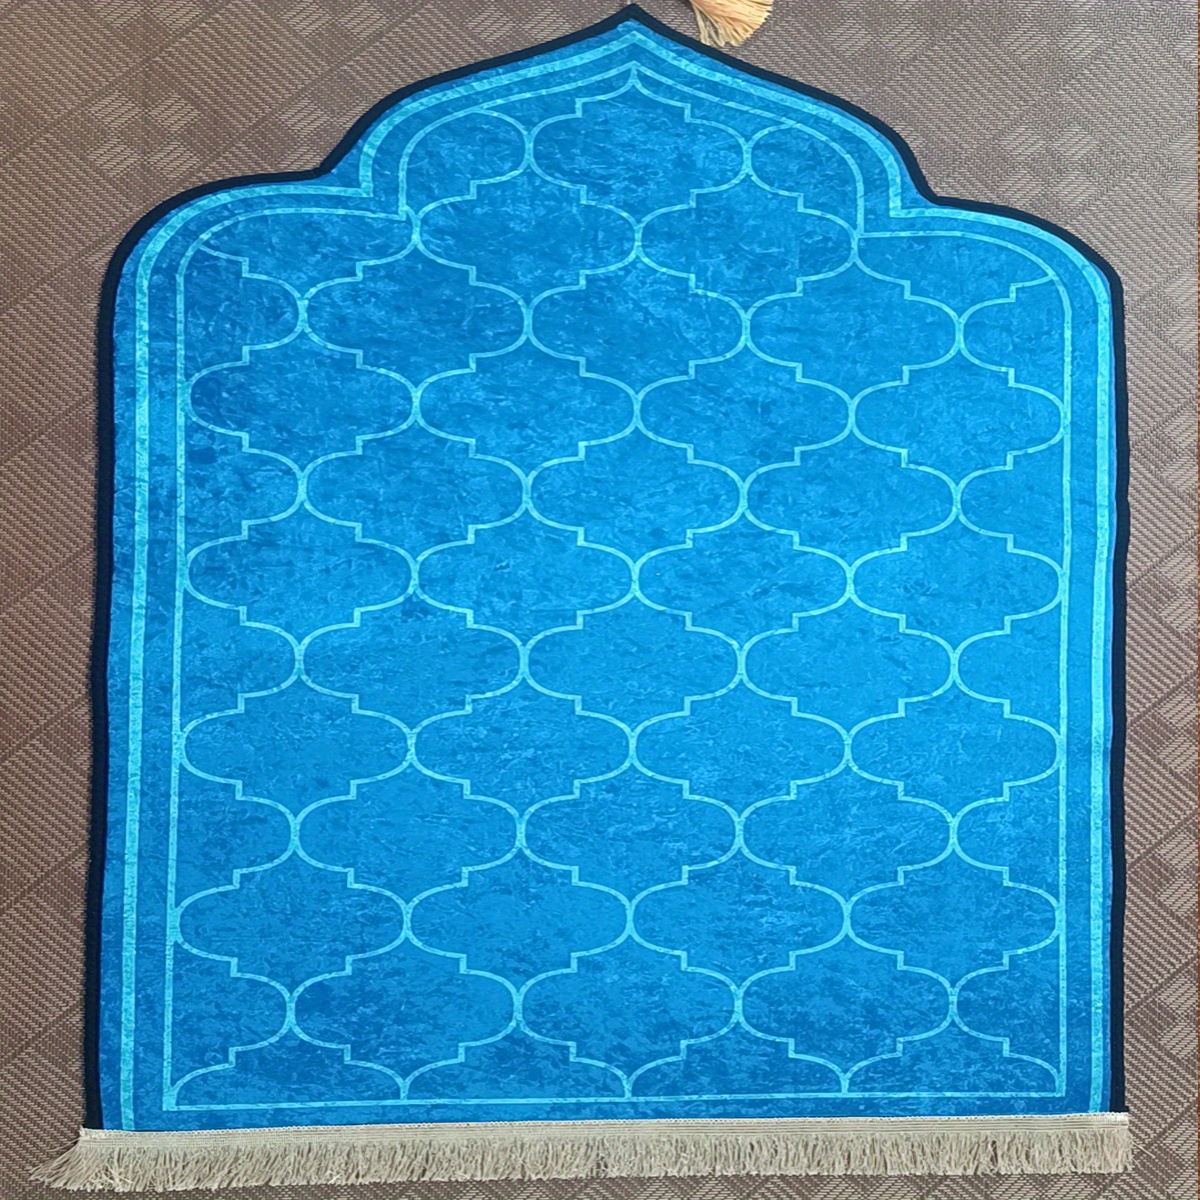 Tapis de Prière Musulman Portable avec Boussole - Format de Poche